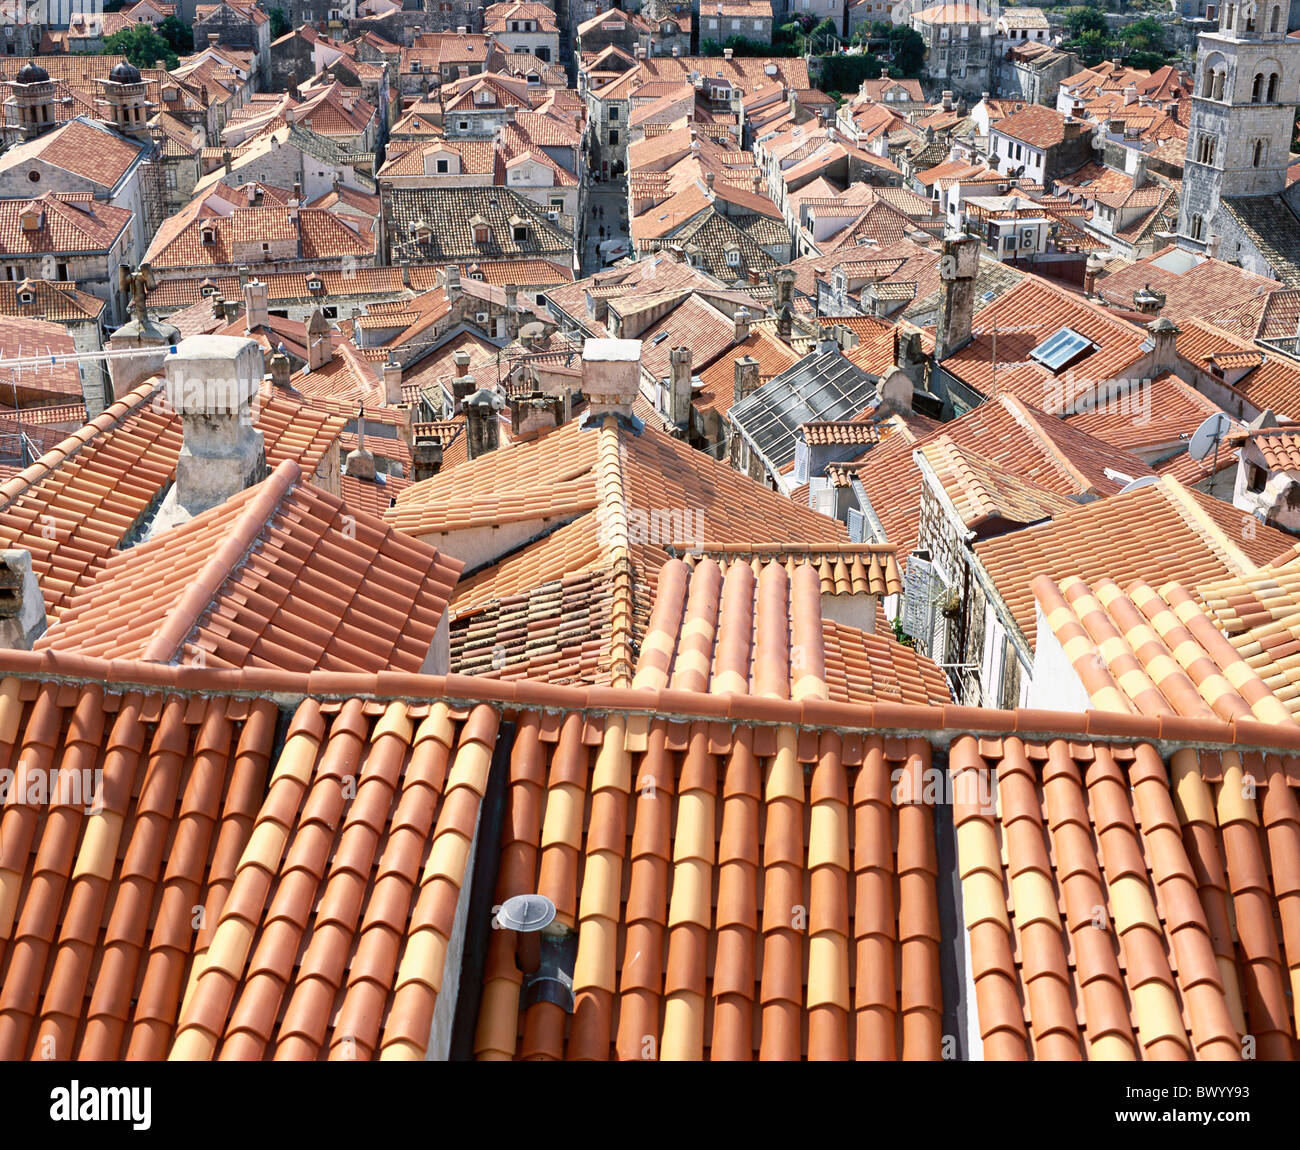 Les toits de la vieille ville historique de Dubrovnik Croatie Dalmatie town city aperçu du patrimoine culturel mondial de l'UNESCO Banque D'Images